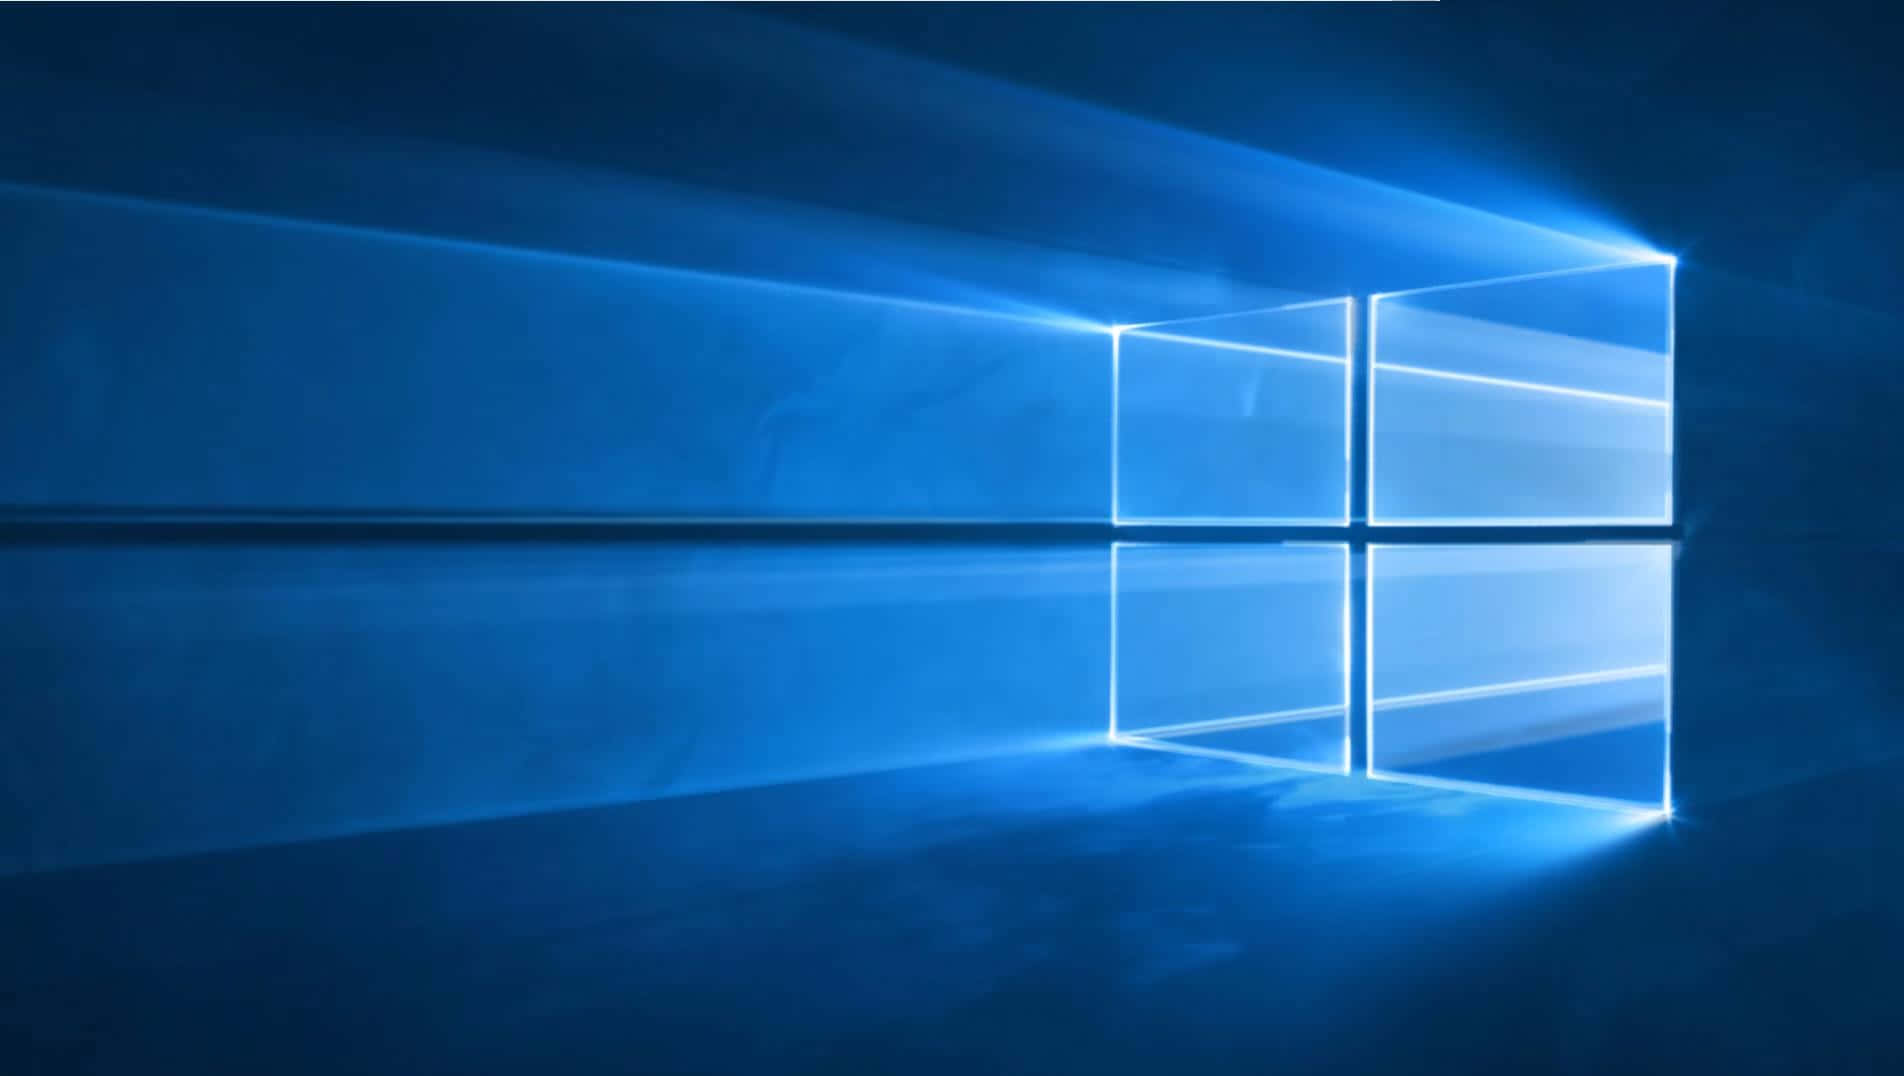 Logotipode Windows 10 Con Un Fondo Azul Fondo de pantalla